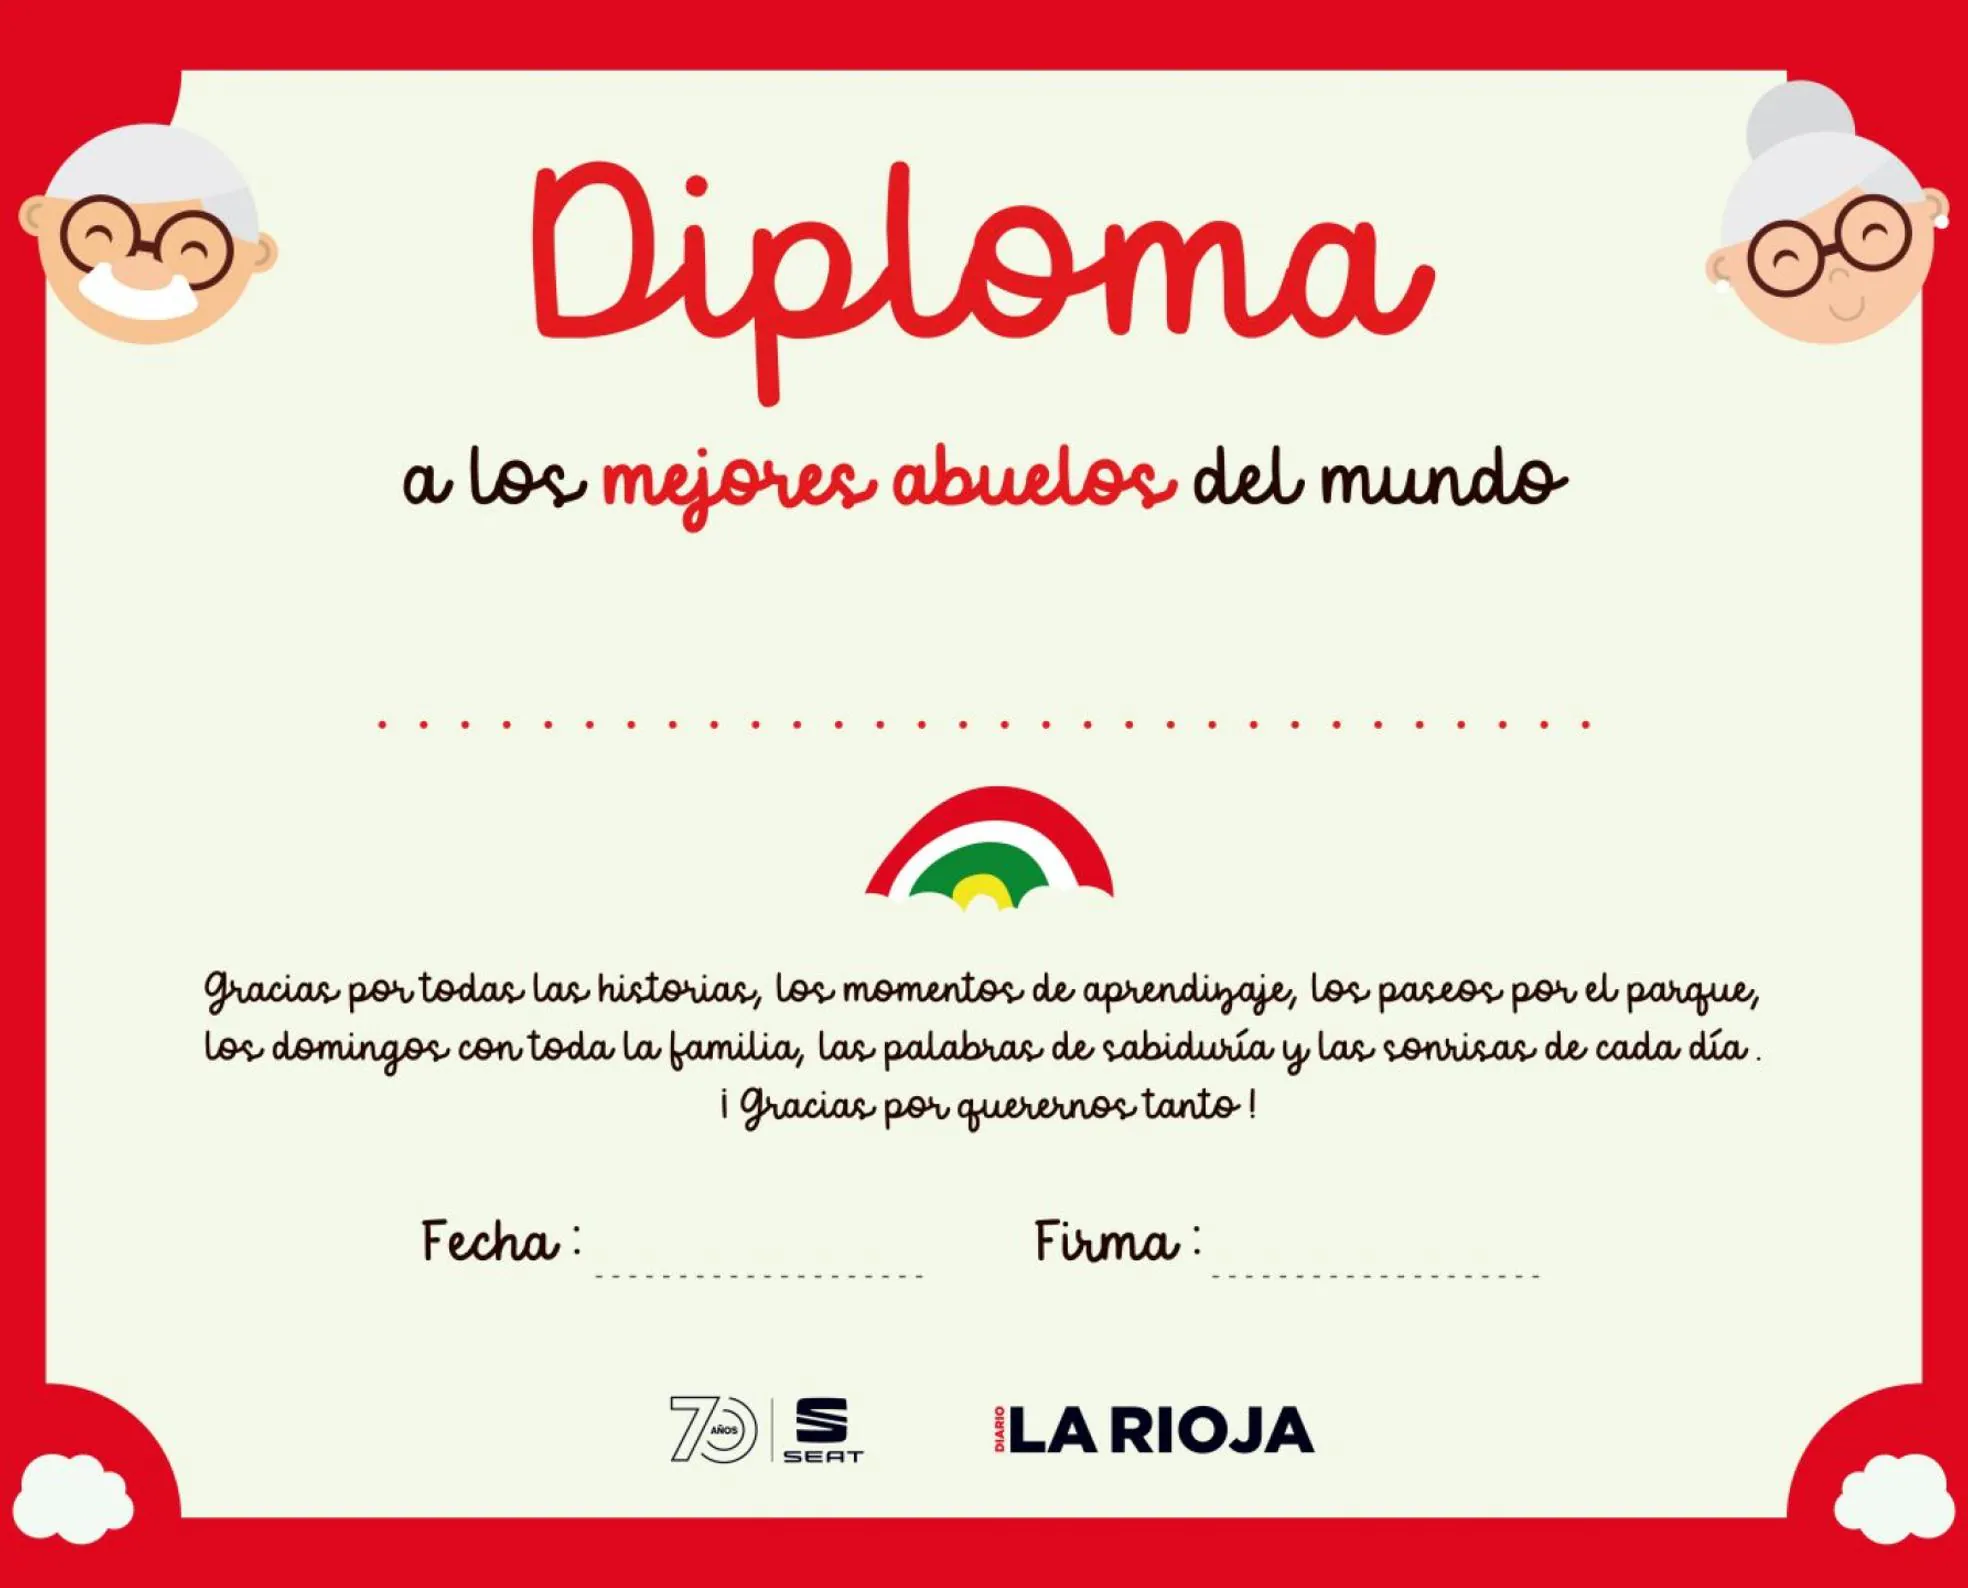 Diploma Al Mejor Abuelo A los mejores abuelos del mundo» | La Rioja